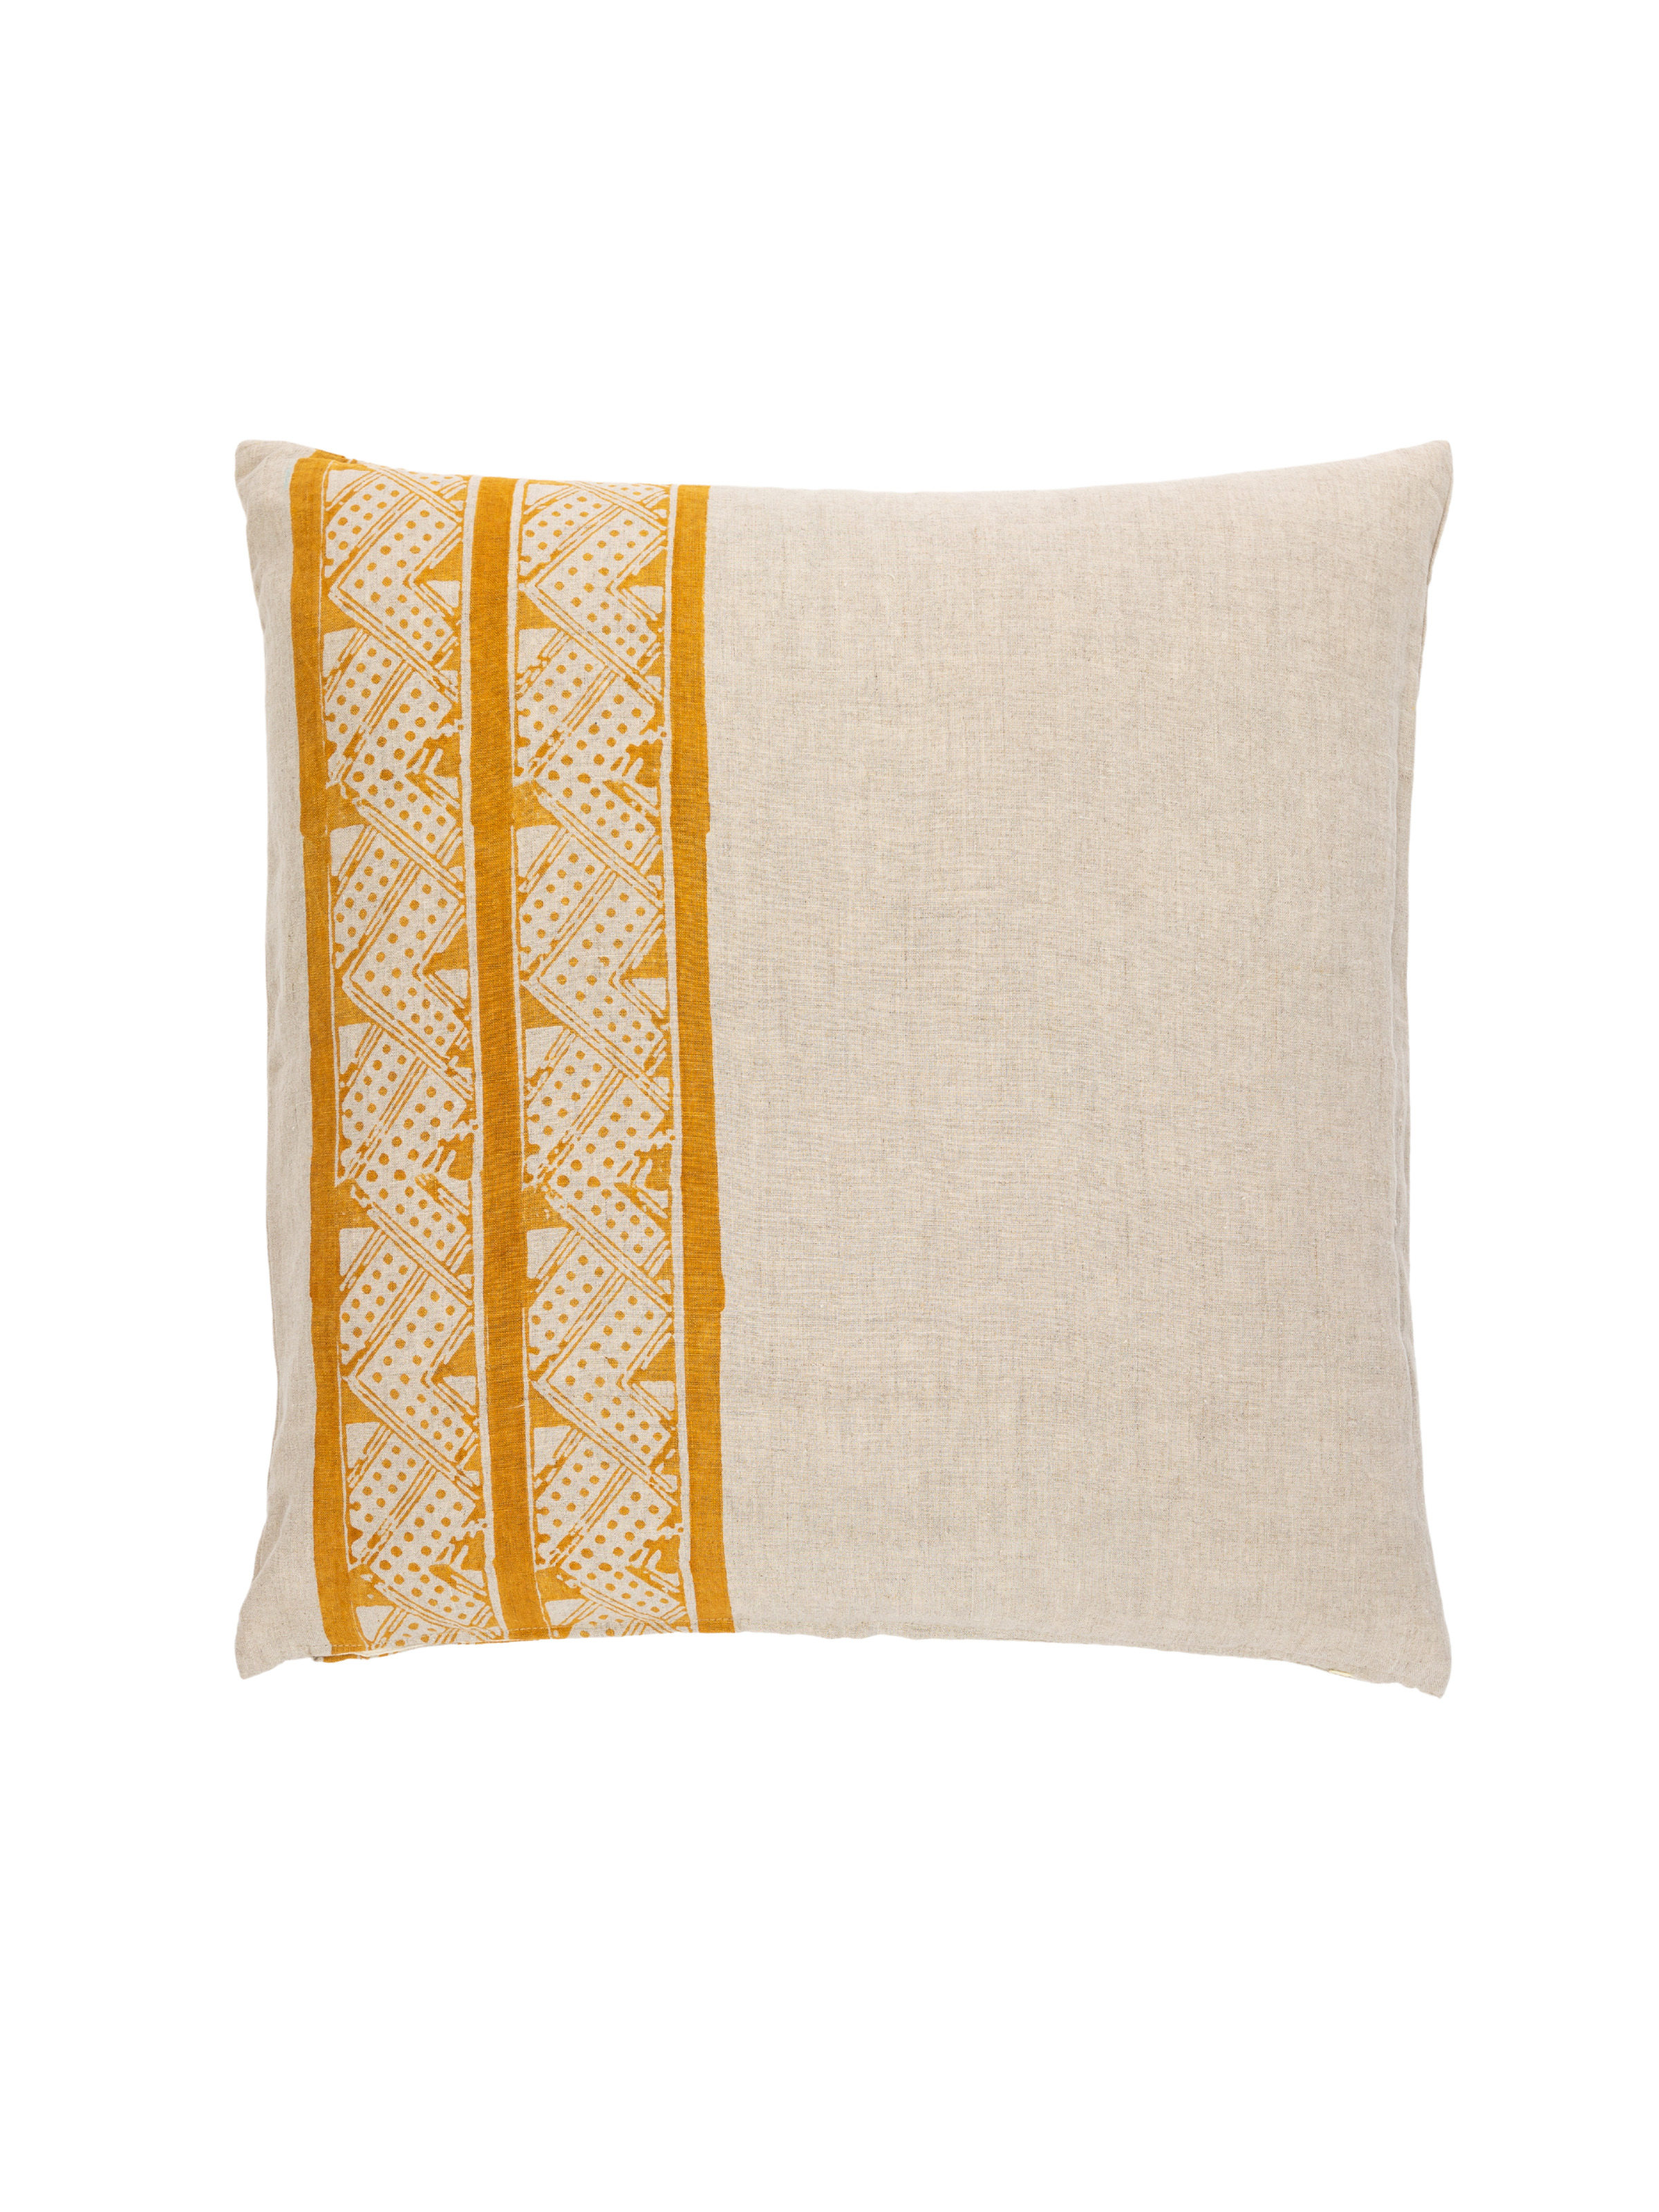 Mancala Ochre Decorative Pillow